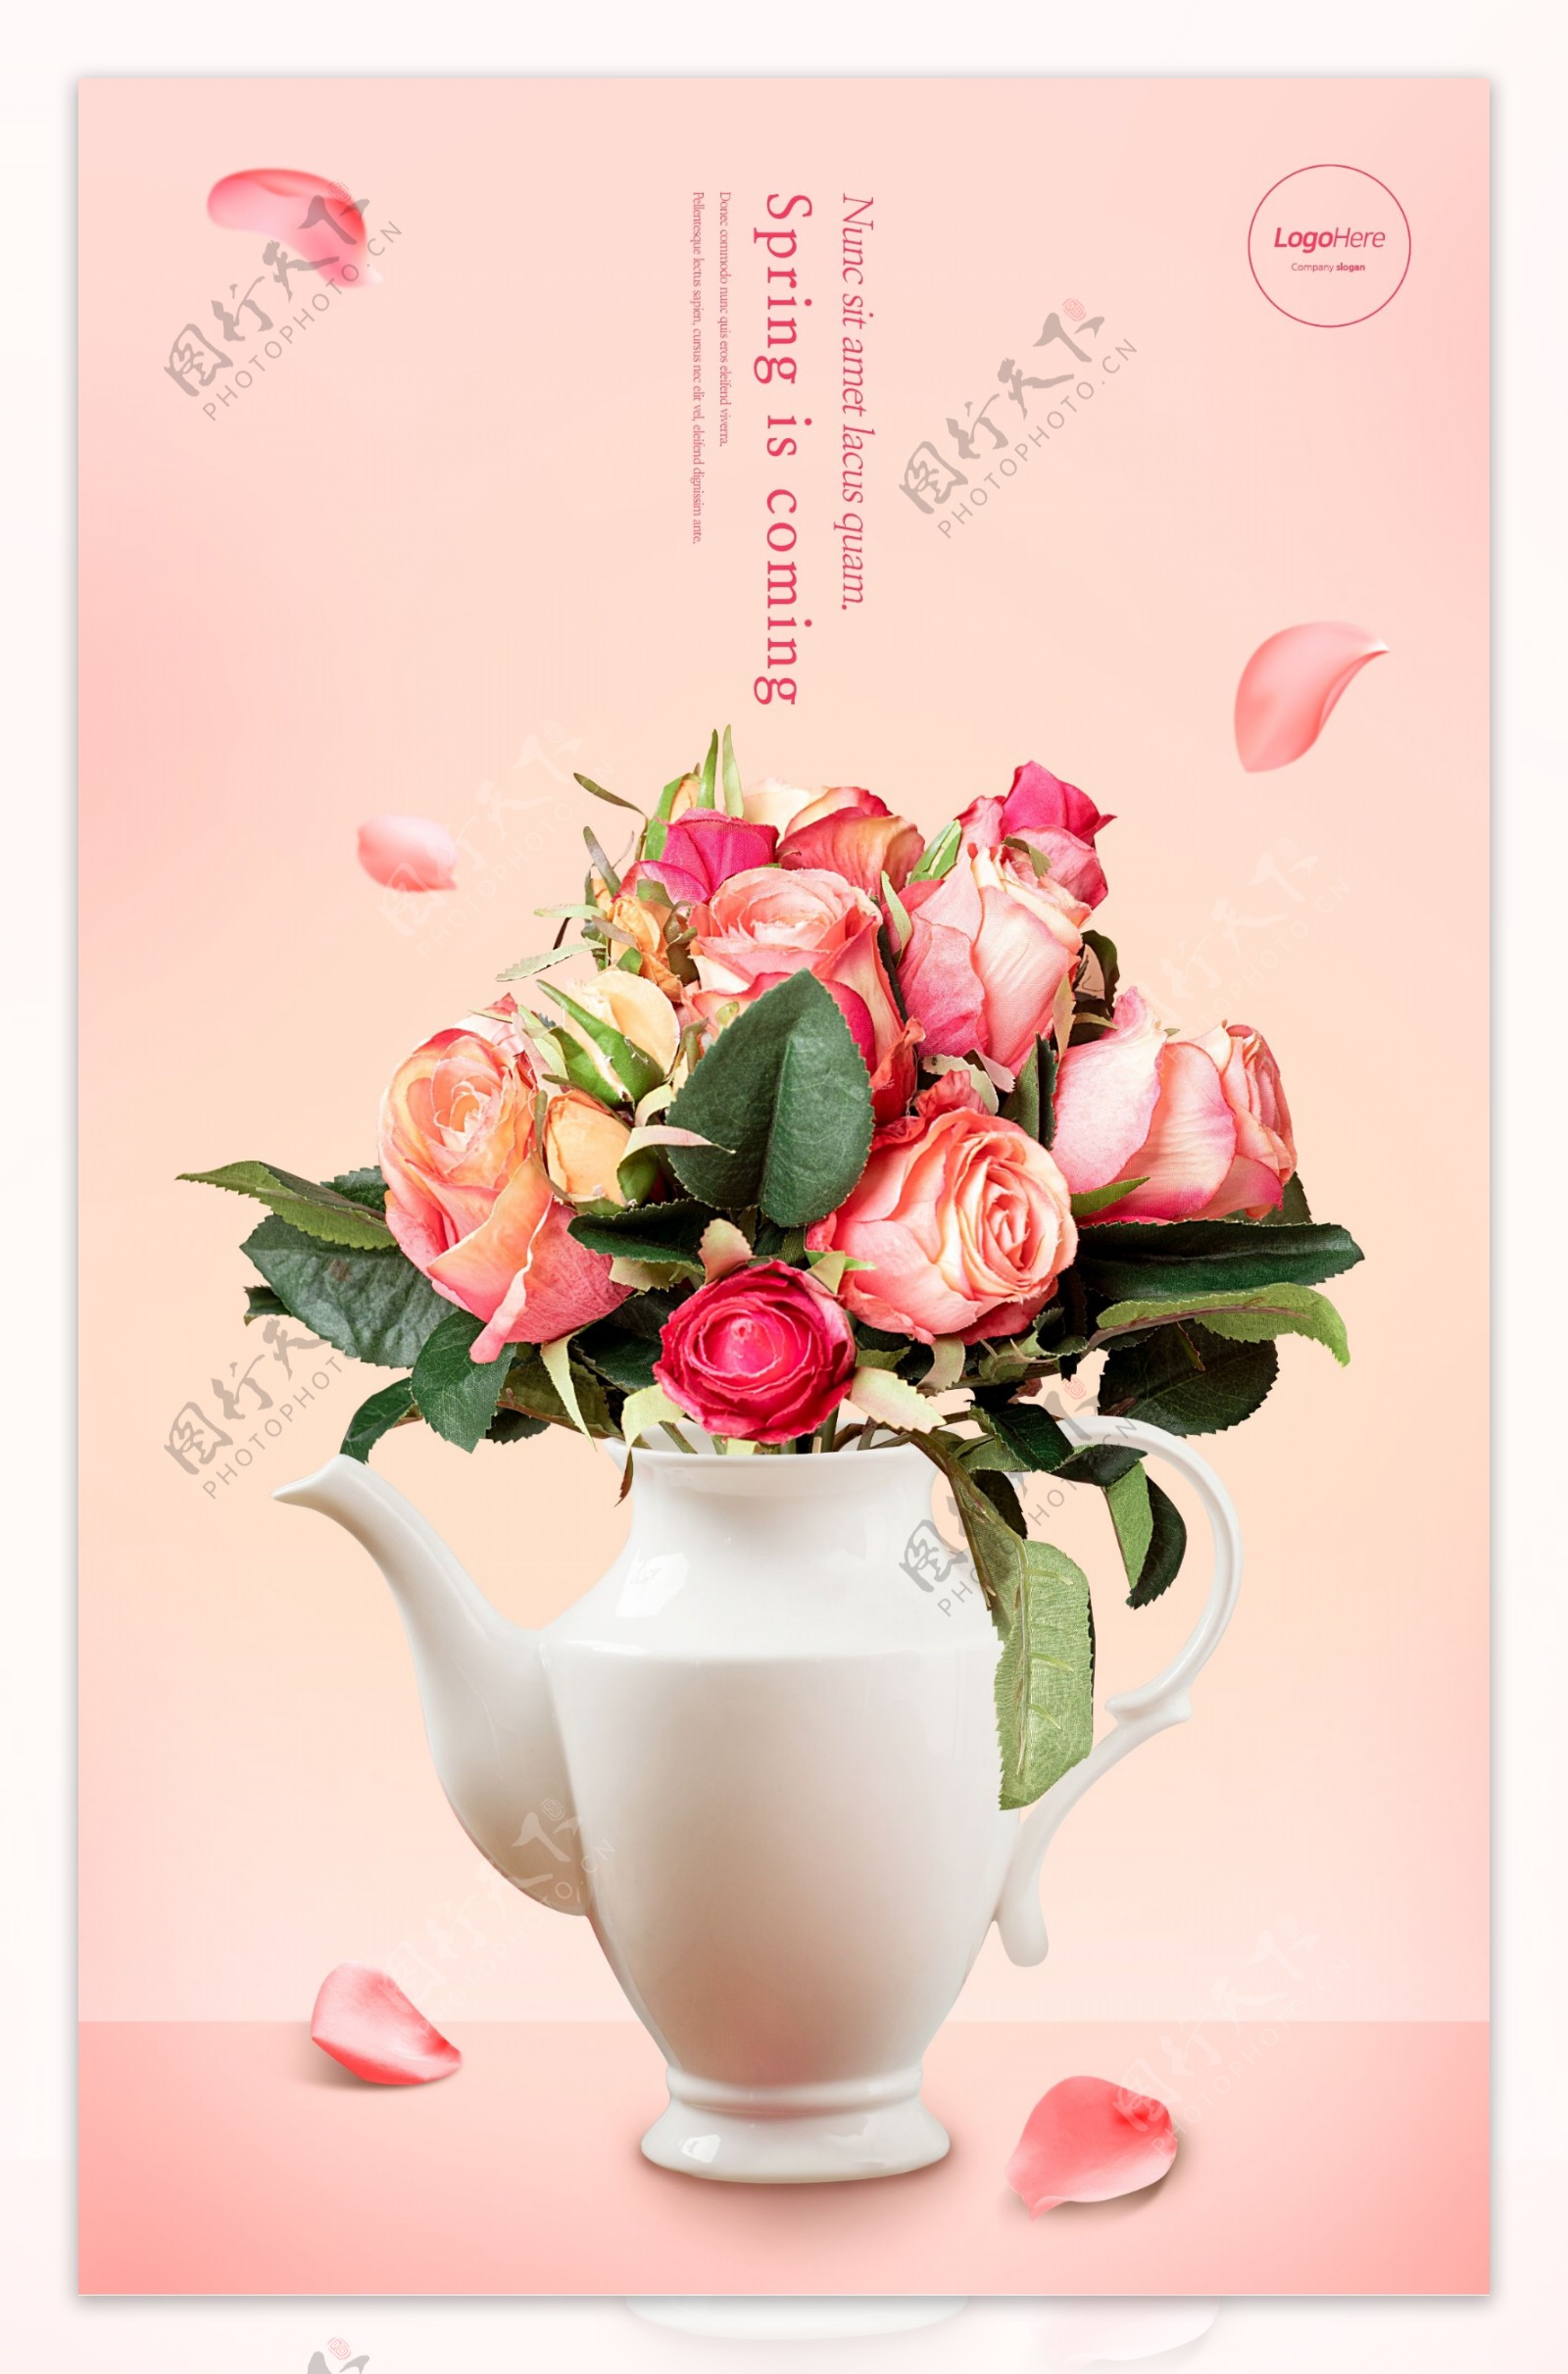 白瓷茶壶玫瑰花束纷飞花瓣